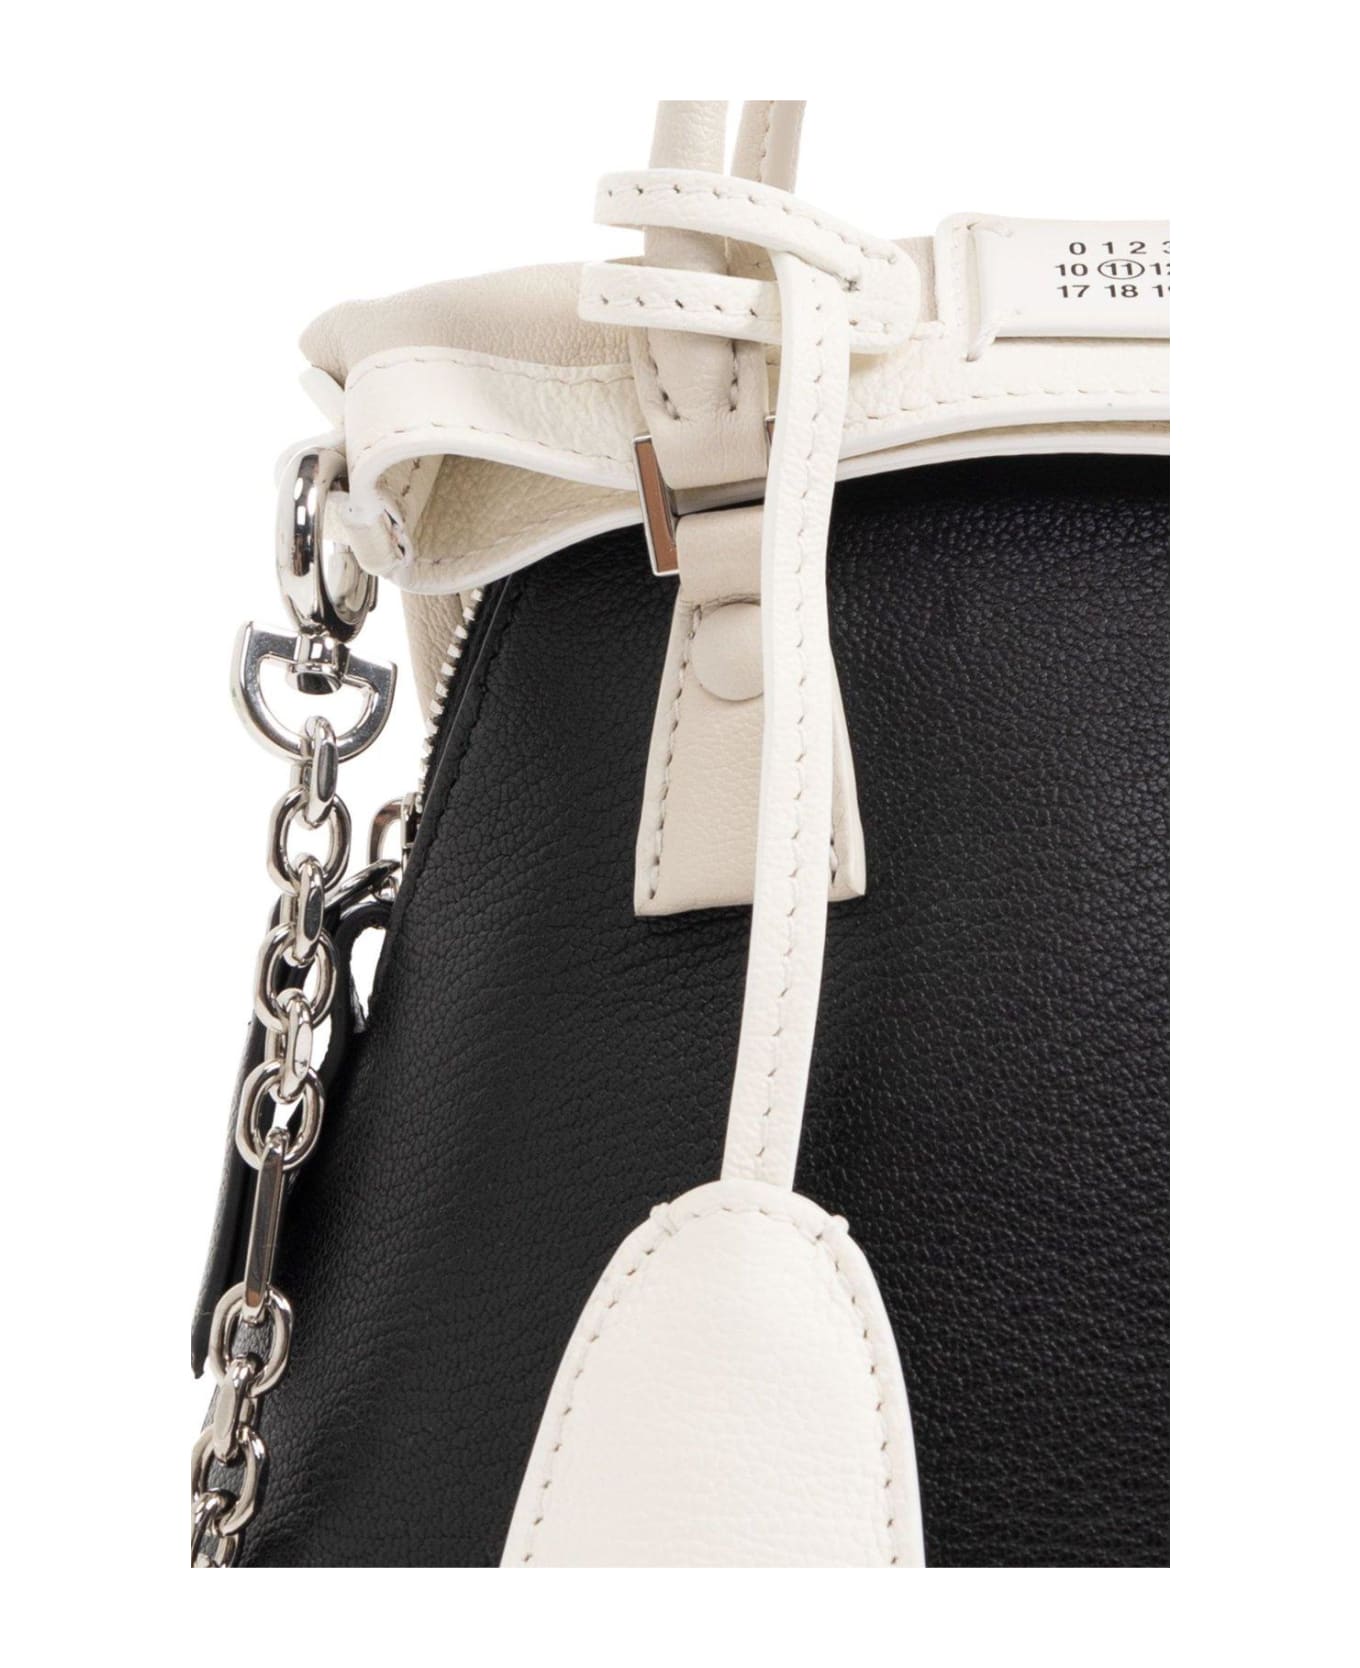 Maison Margiela 5ac Classique Micro Handbag - White/Black